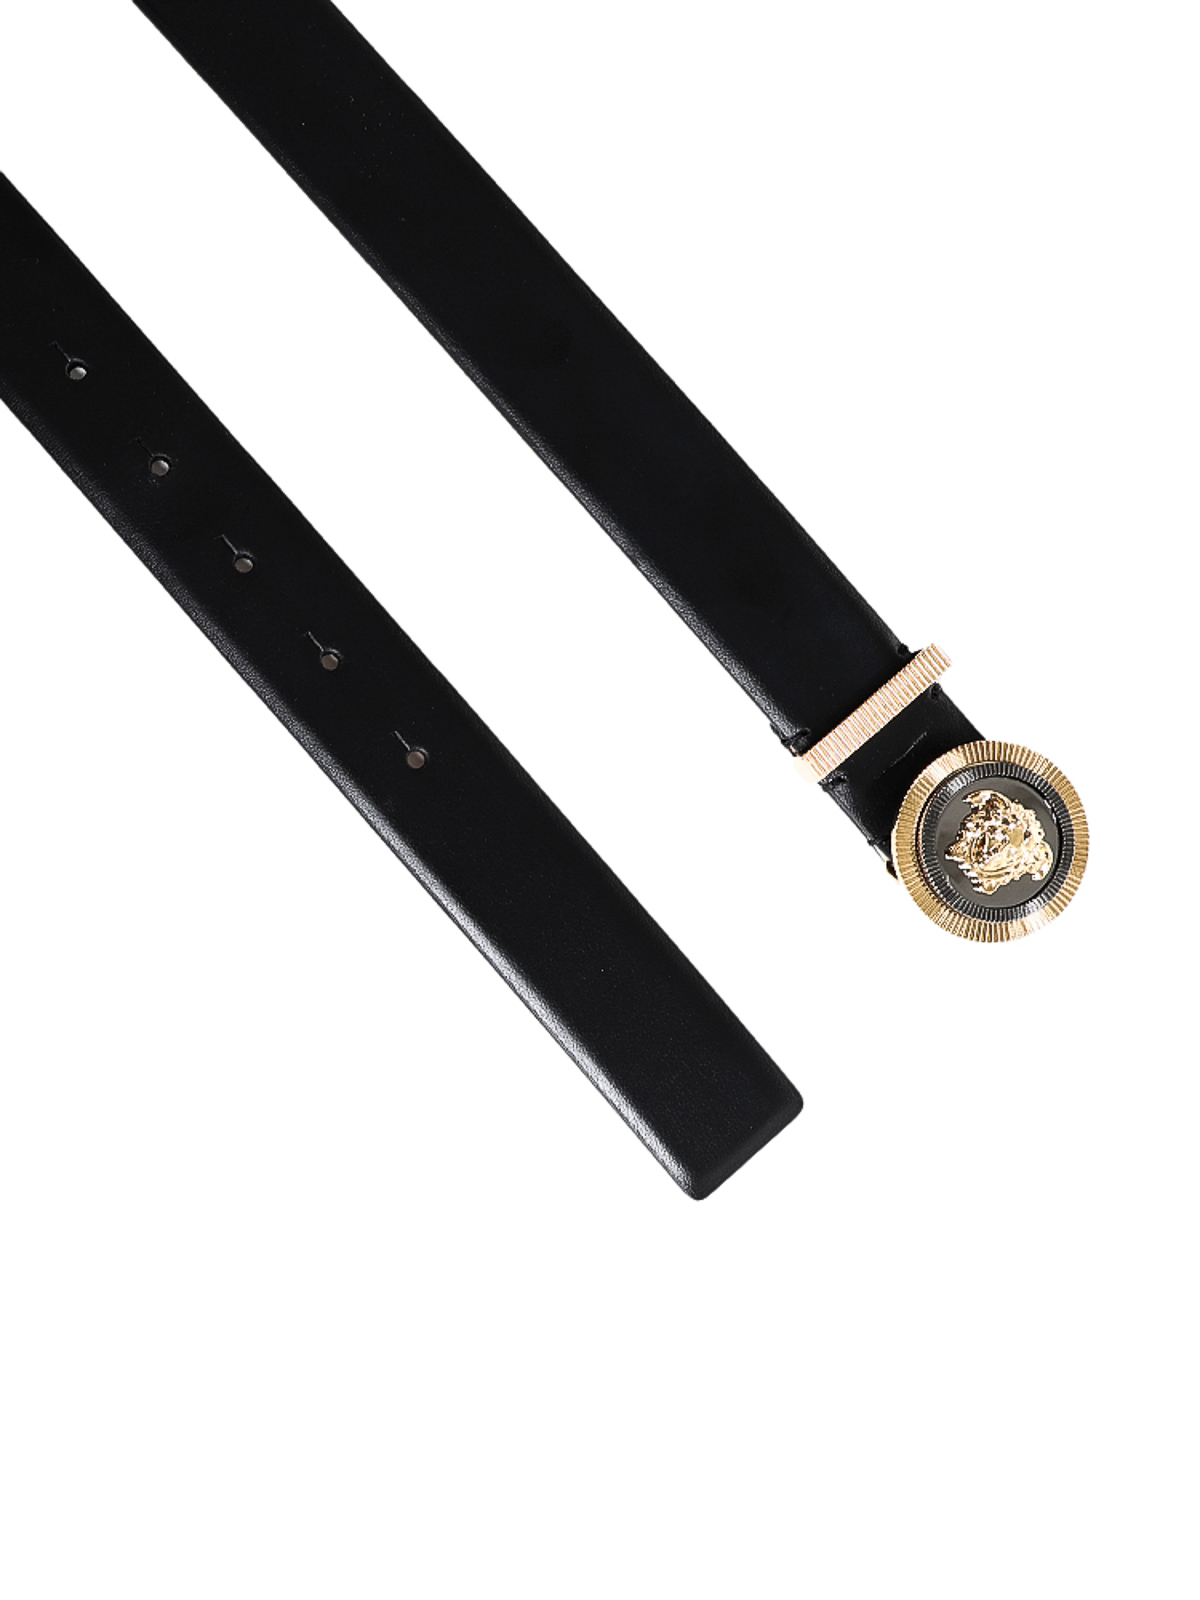 Belts Versace - Medusa Head buckle belt - 10040091A048461B00R